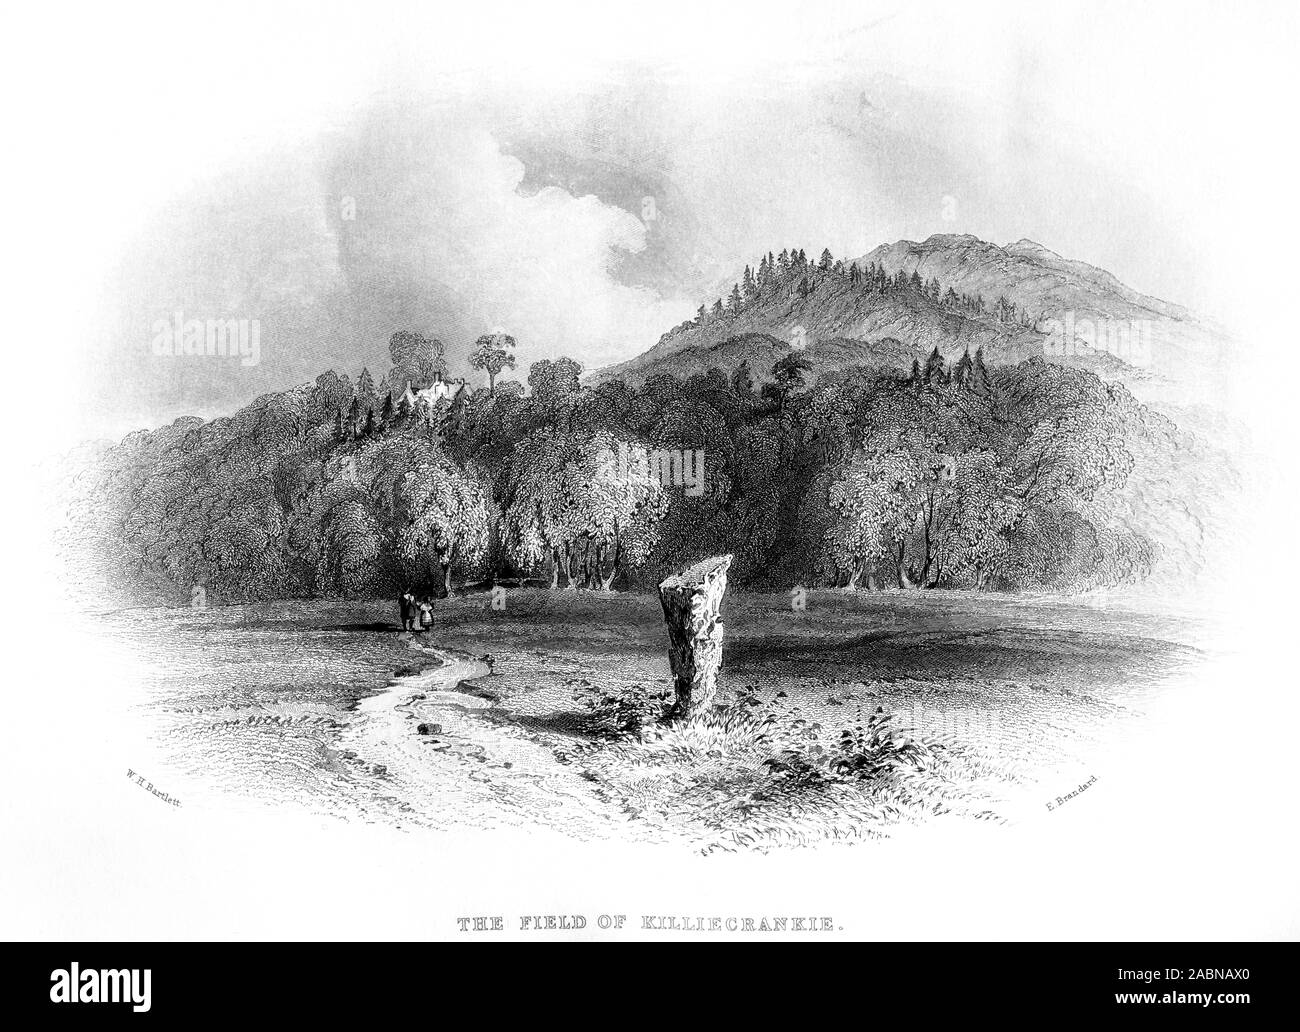 Eine Gravur des Feldes von Killiecrankie gescannt und in hoher Auflösung aus einem Buch im Jahre 1859 gedruckt. Glaubten copyright frei. Stockfoto